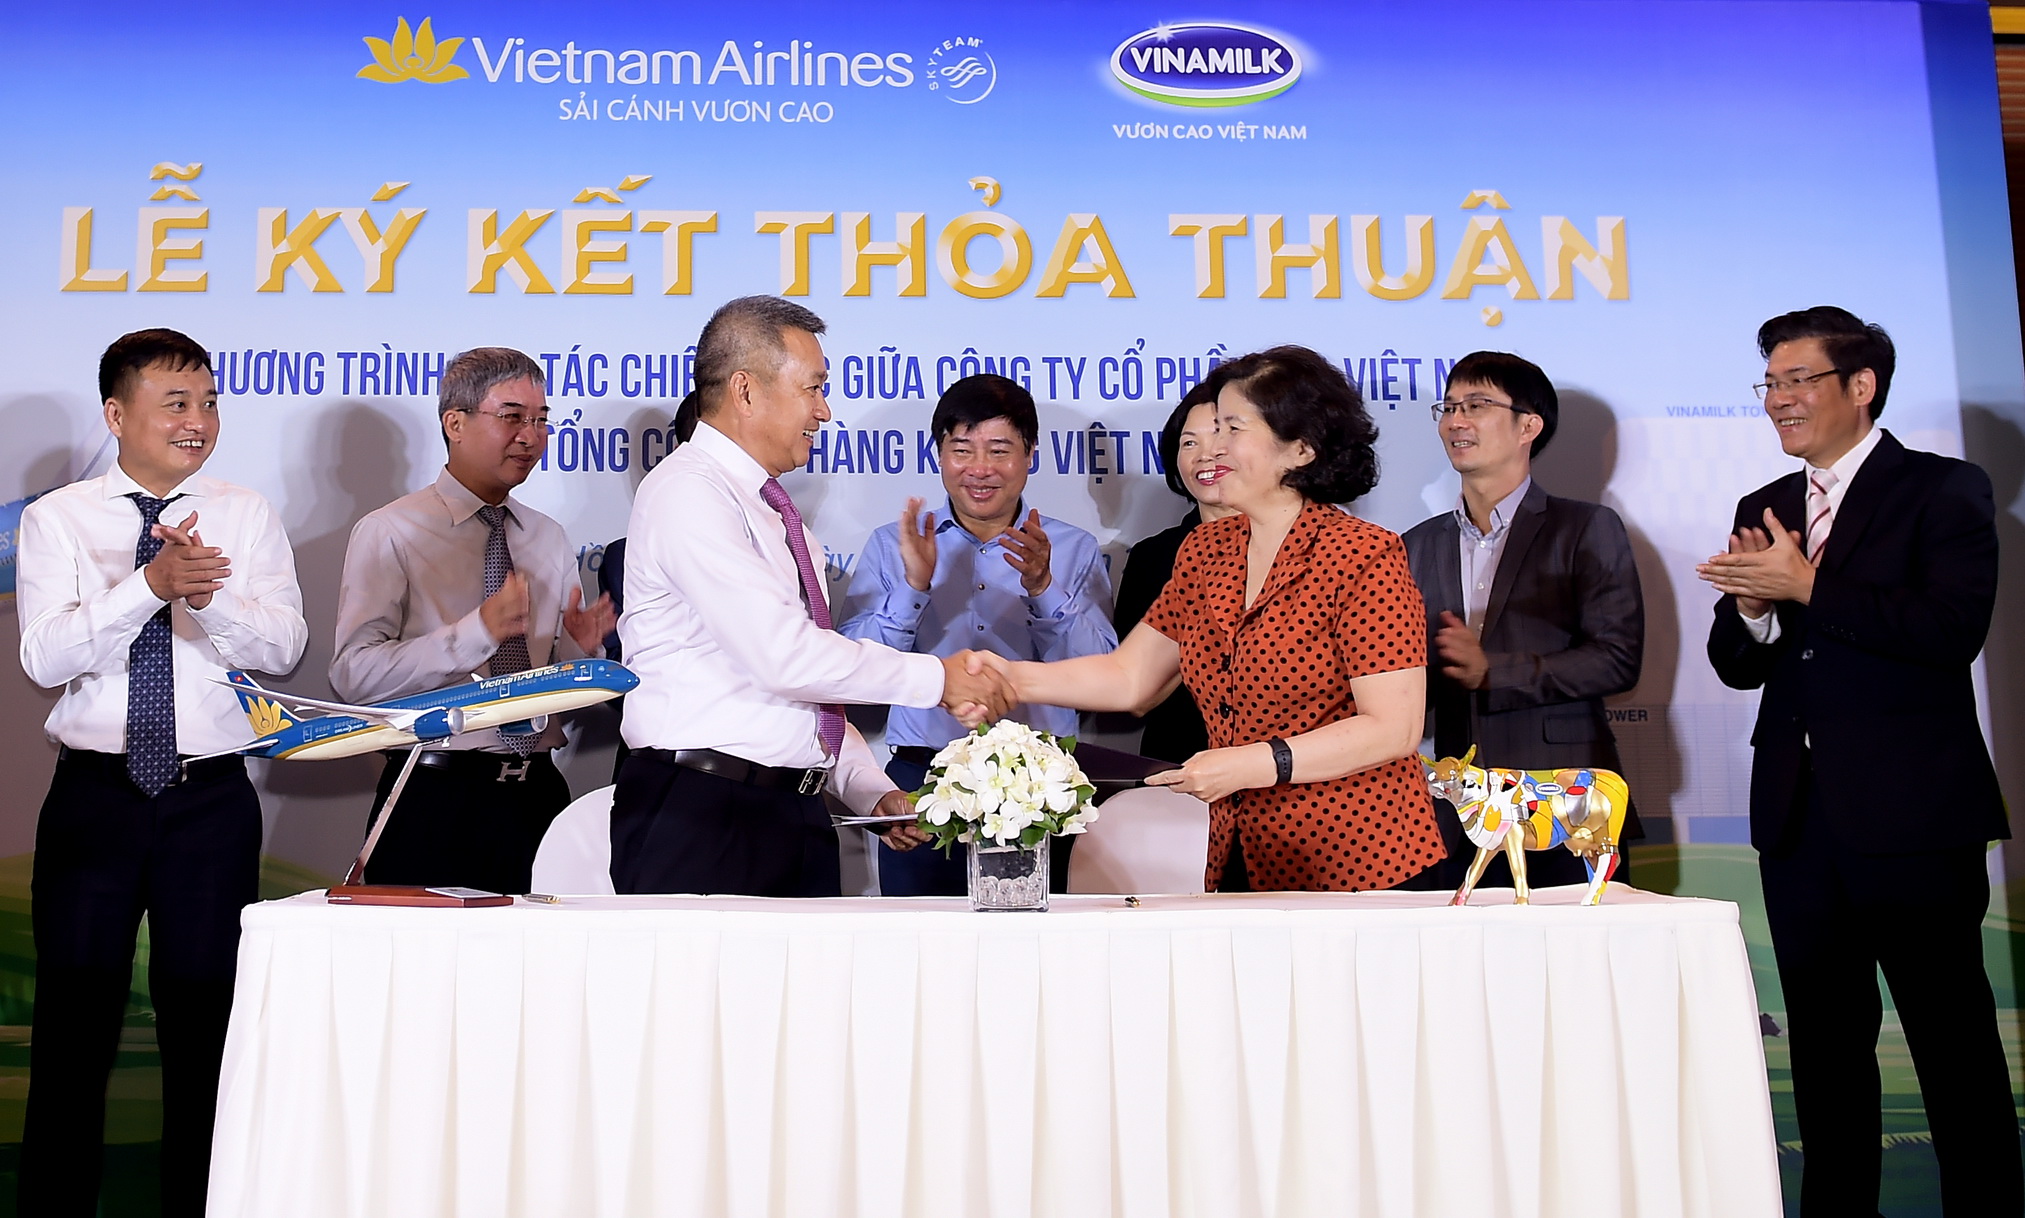 Ông Dương Trí Thành - Tổng Giám đốc Vietnam Airlines (trái) và bà Mai Kiều Liên - Tổng Giám đốc Vinamilk (phải) trao thỏa thuận hợp tác chiến lược.